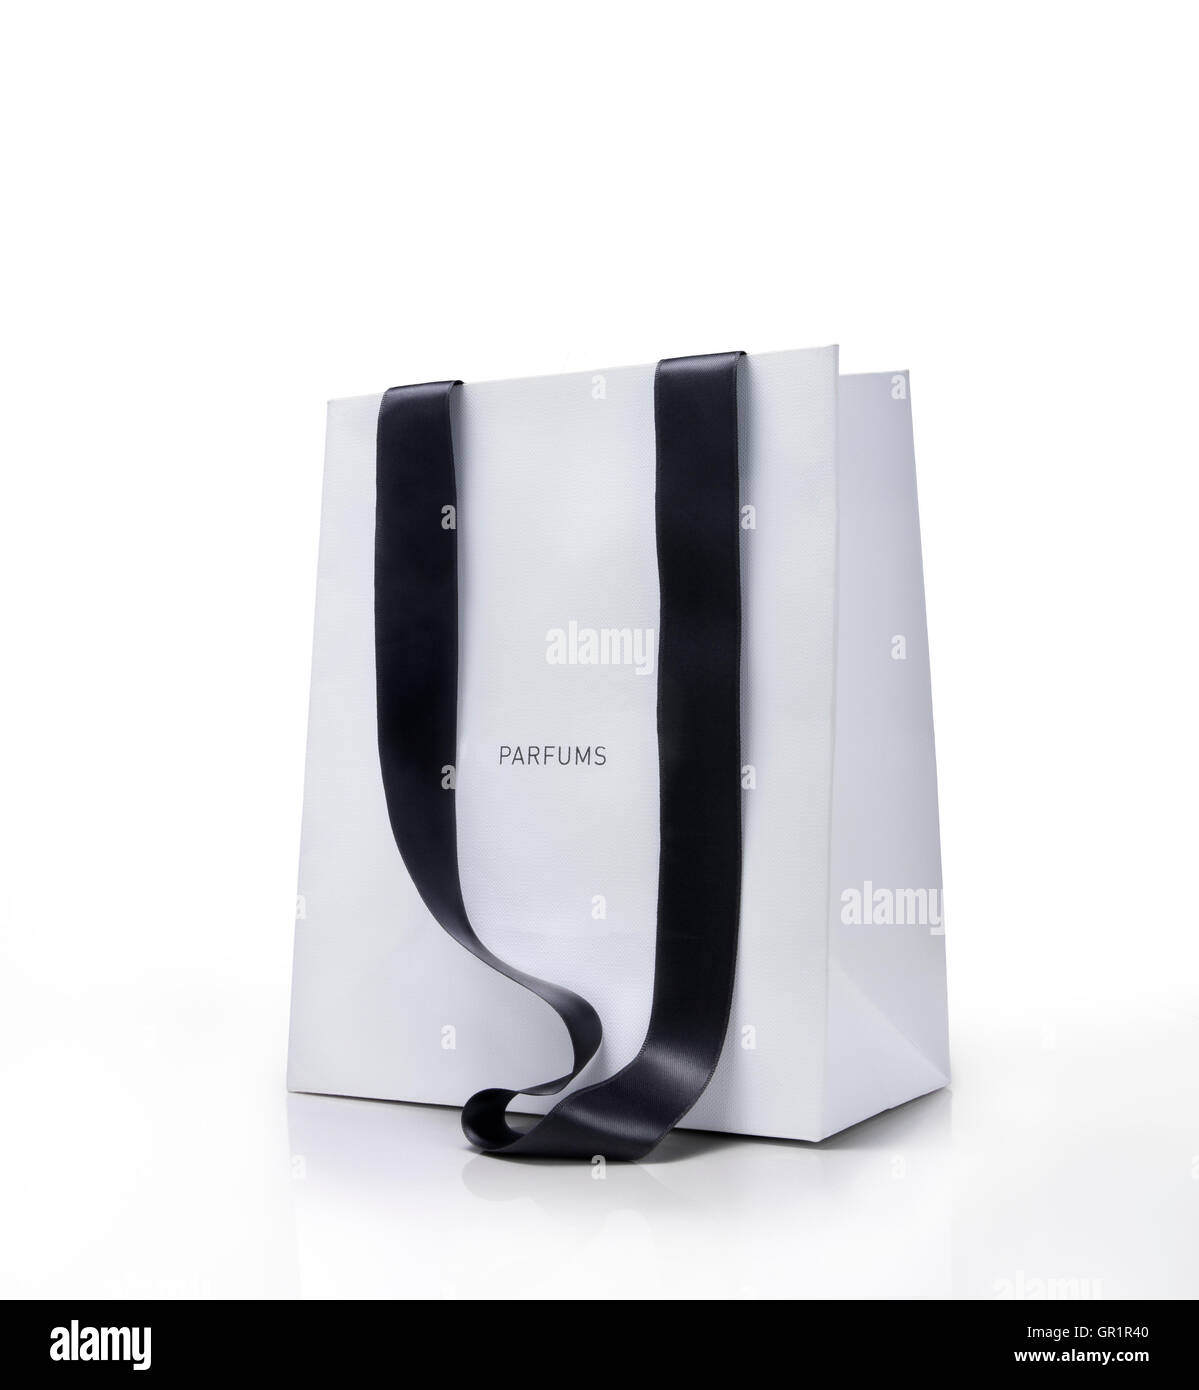 Weiße Einkaufstasche mit schwarzen Griffen. Parfums-Konzept. Clipping-Pfad nur auf Tasche. Stockfoto